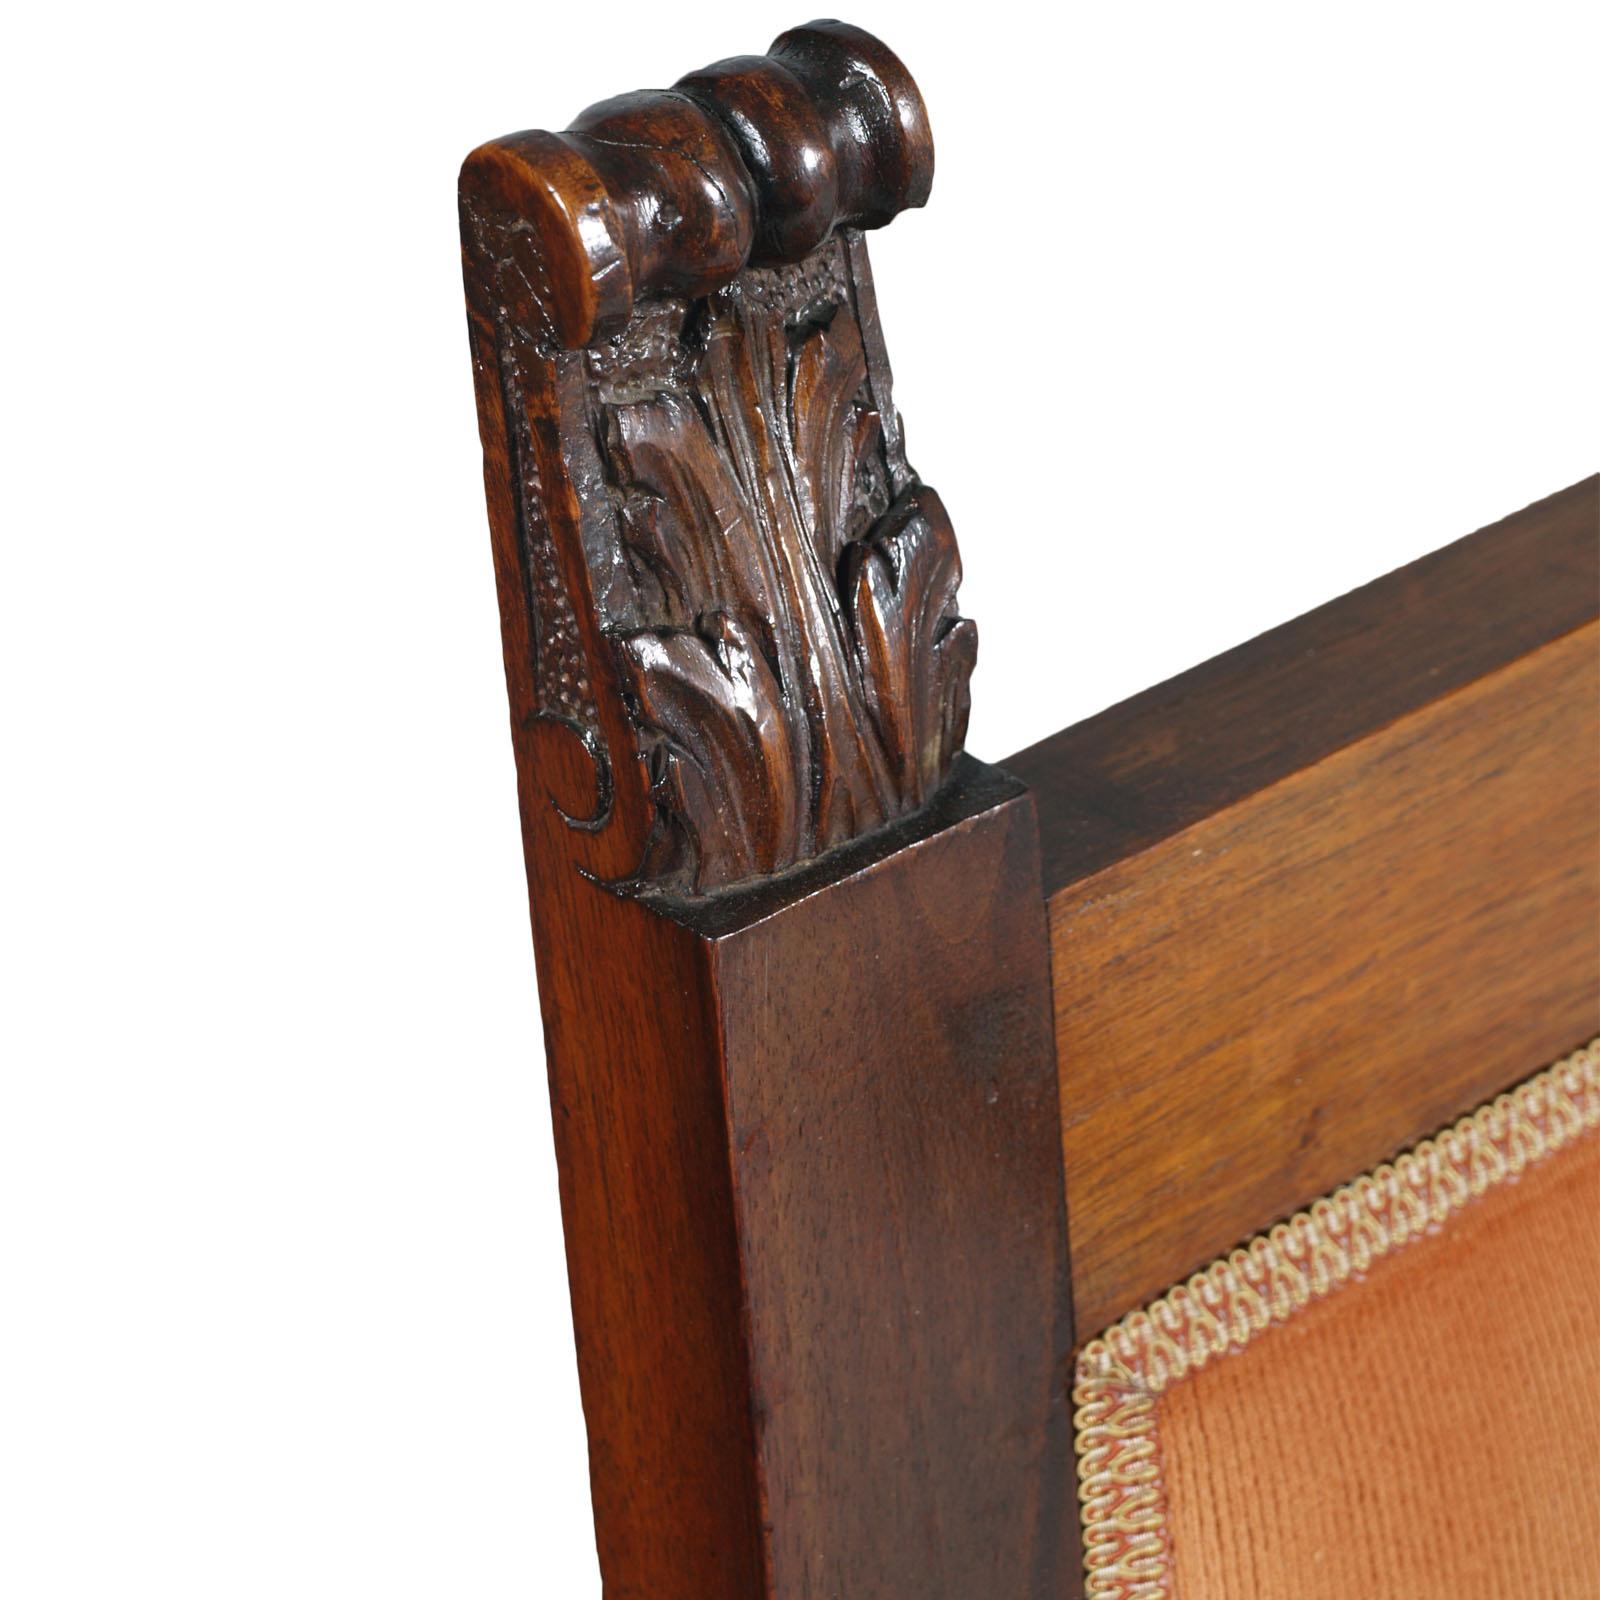 Bedeutender toskanischer Stuhl um 1900 für den Kopf des Tisches, Michele Bonciani zuzuschreiben, aus massivem, handgeschnitztem Nussbaum, mit Wachs poliert, mit originaler Polsterung aus saniertem Samt, noch in gutem Zustand. Auf Anfrage können wir